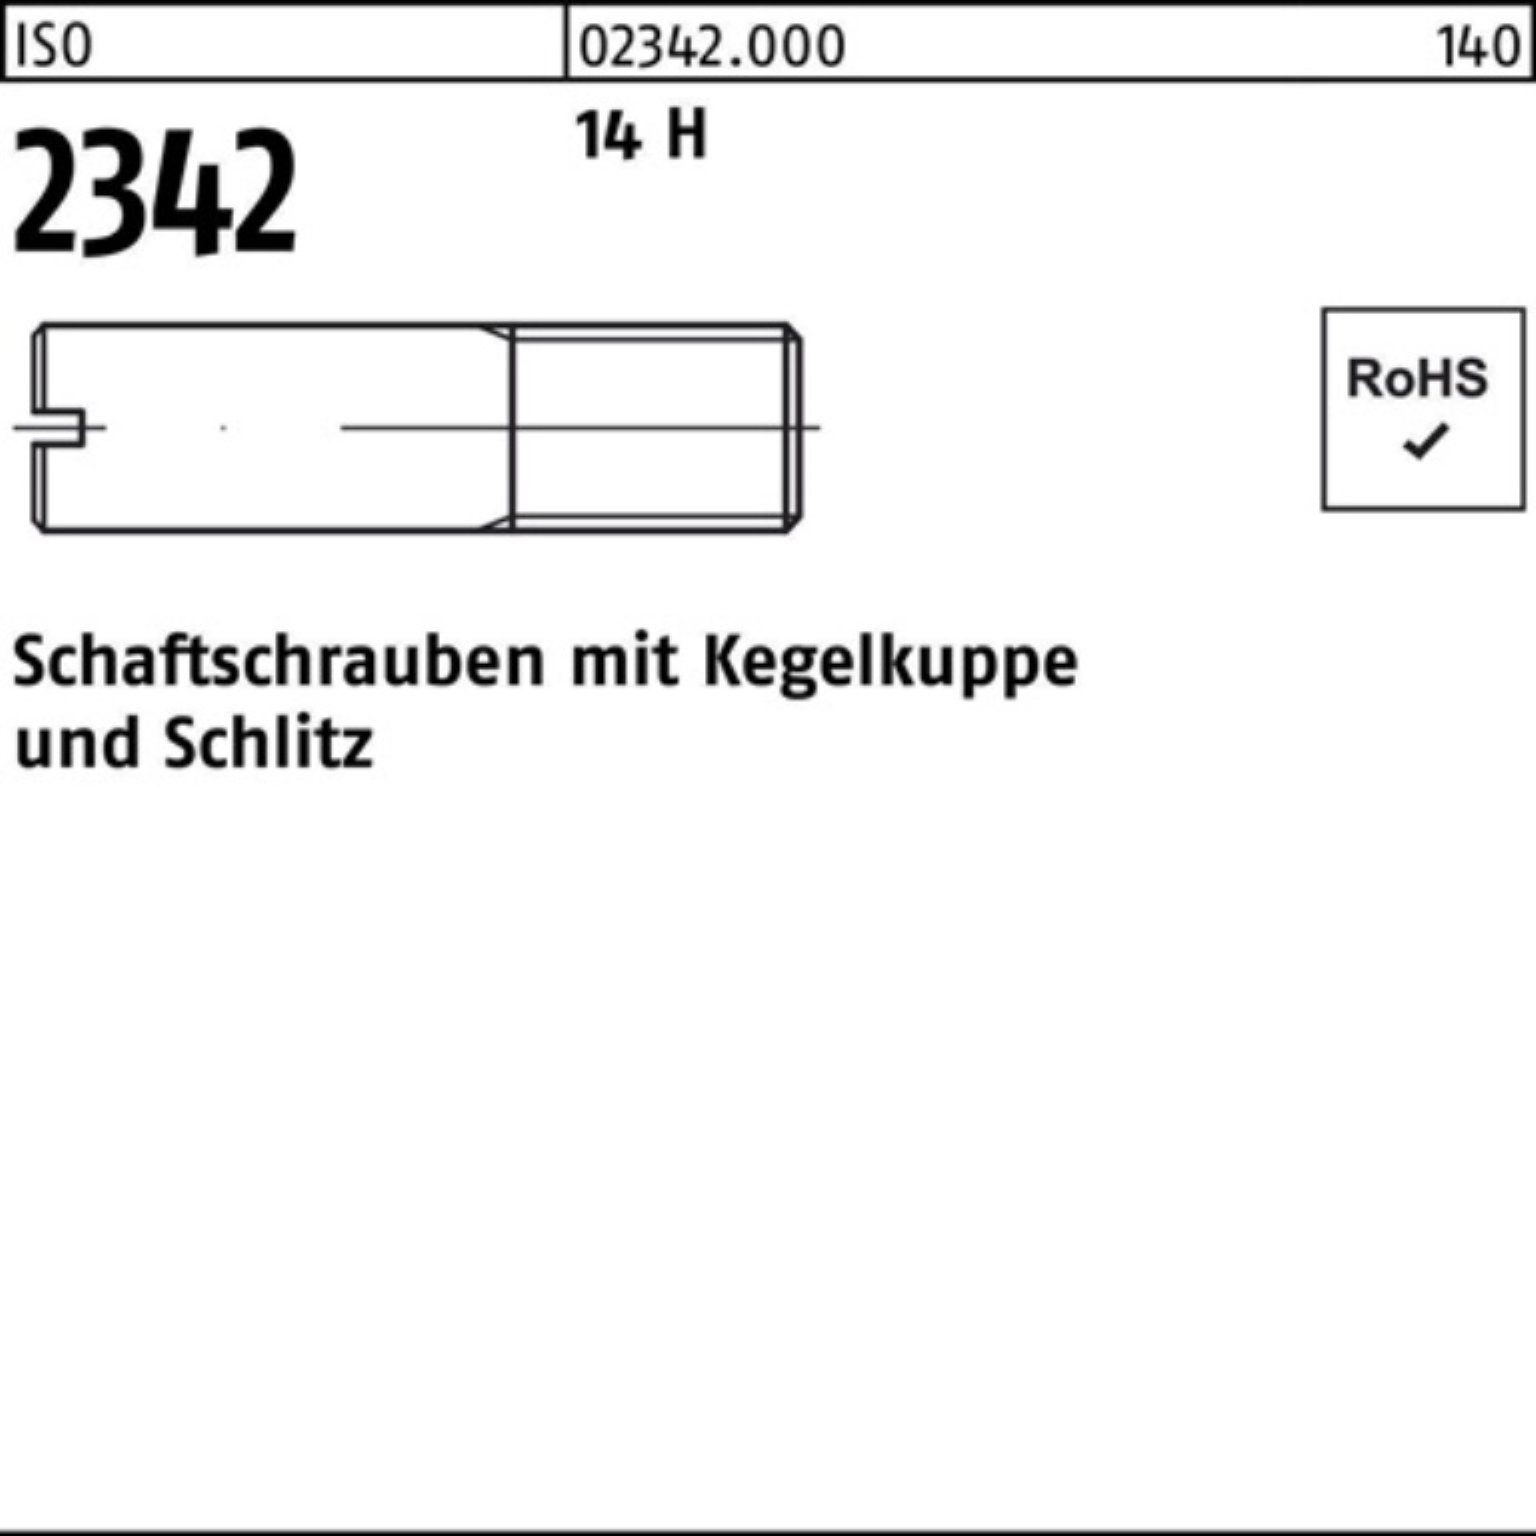 Reyher Schraube 100er Pack ISO 35 100 14 Schaftschraube 2342 M8x H Kegelkuppe/Schlitz